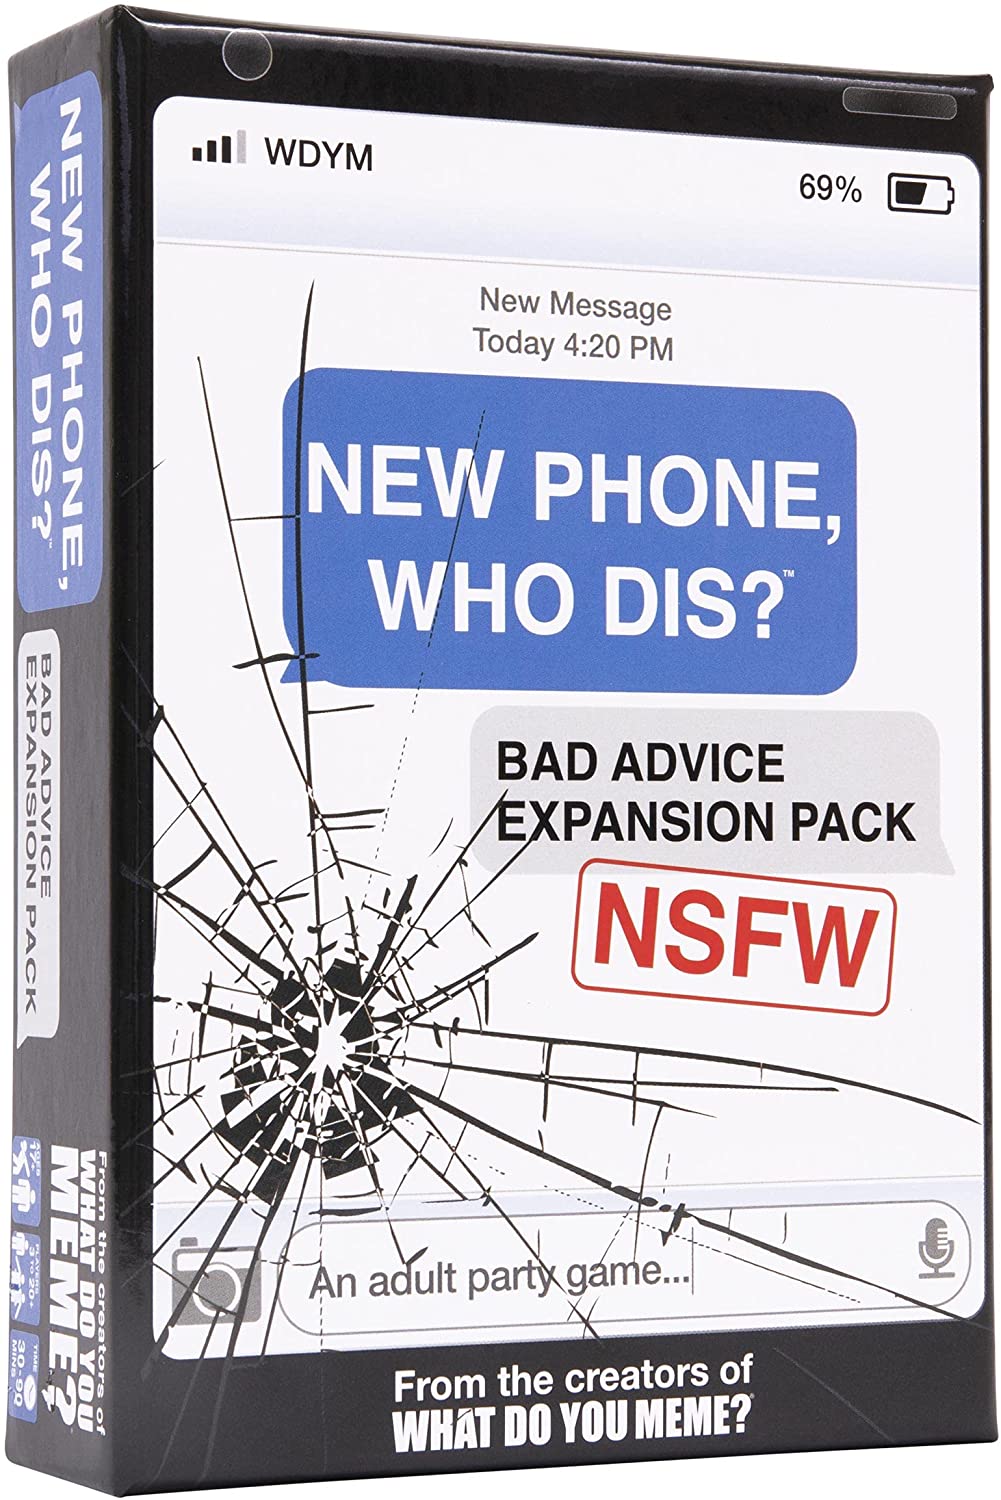 NEW PHONE WHO DIS? BAD ADVICE